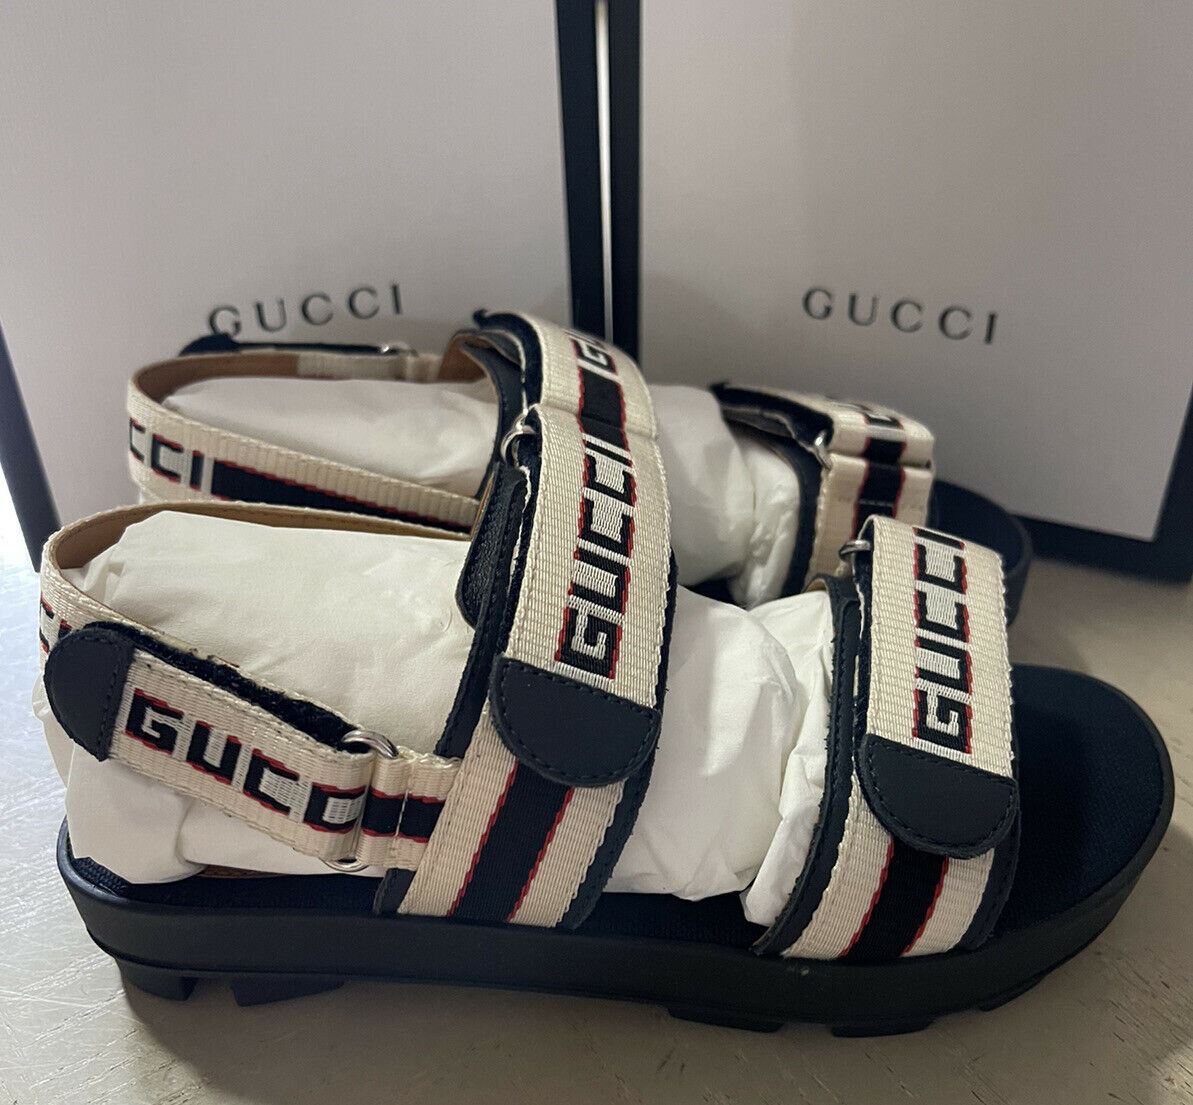 NIB Gucci Kinder-Sandalen aus Segeltuch/Leder, Schwarz/Weiß, Größe 31/13US, Alter 6,5